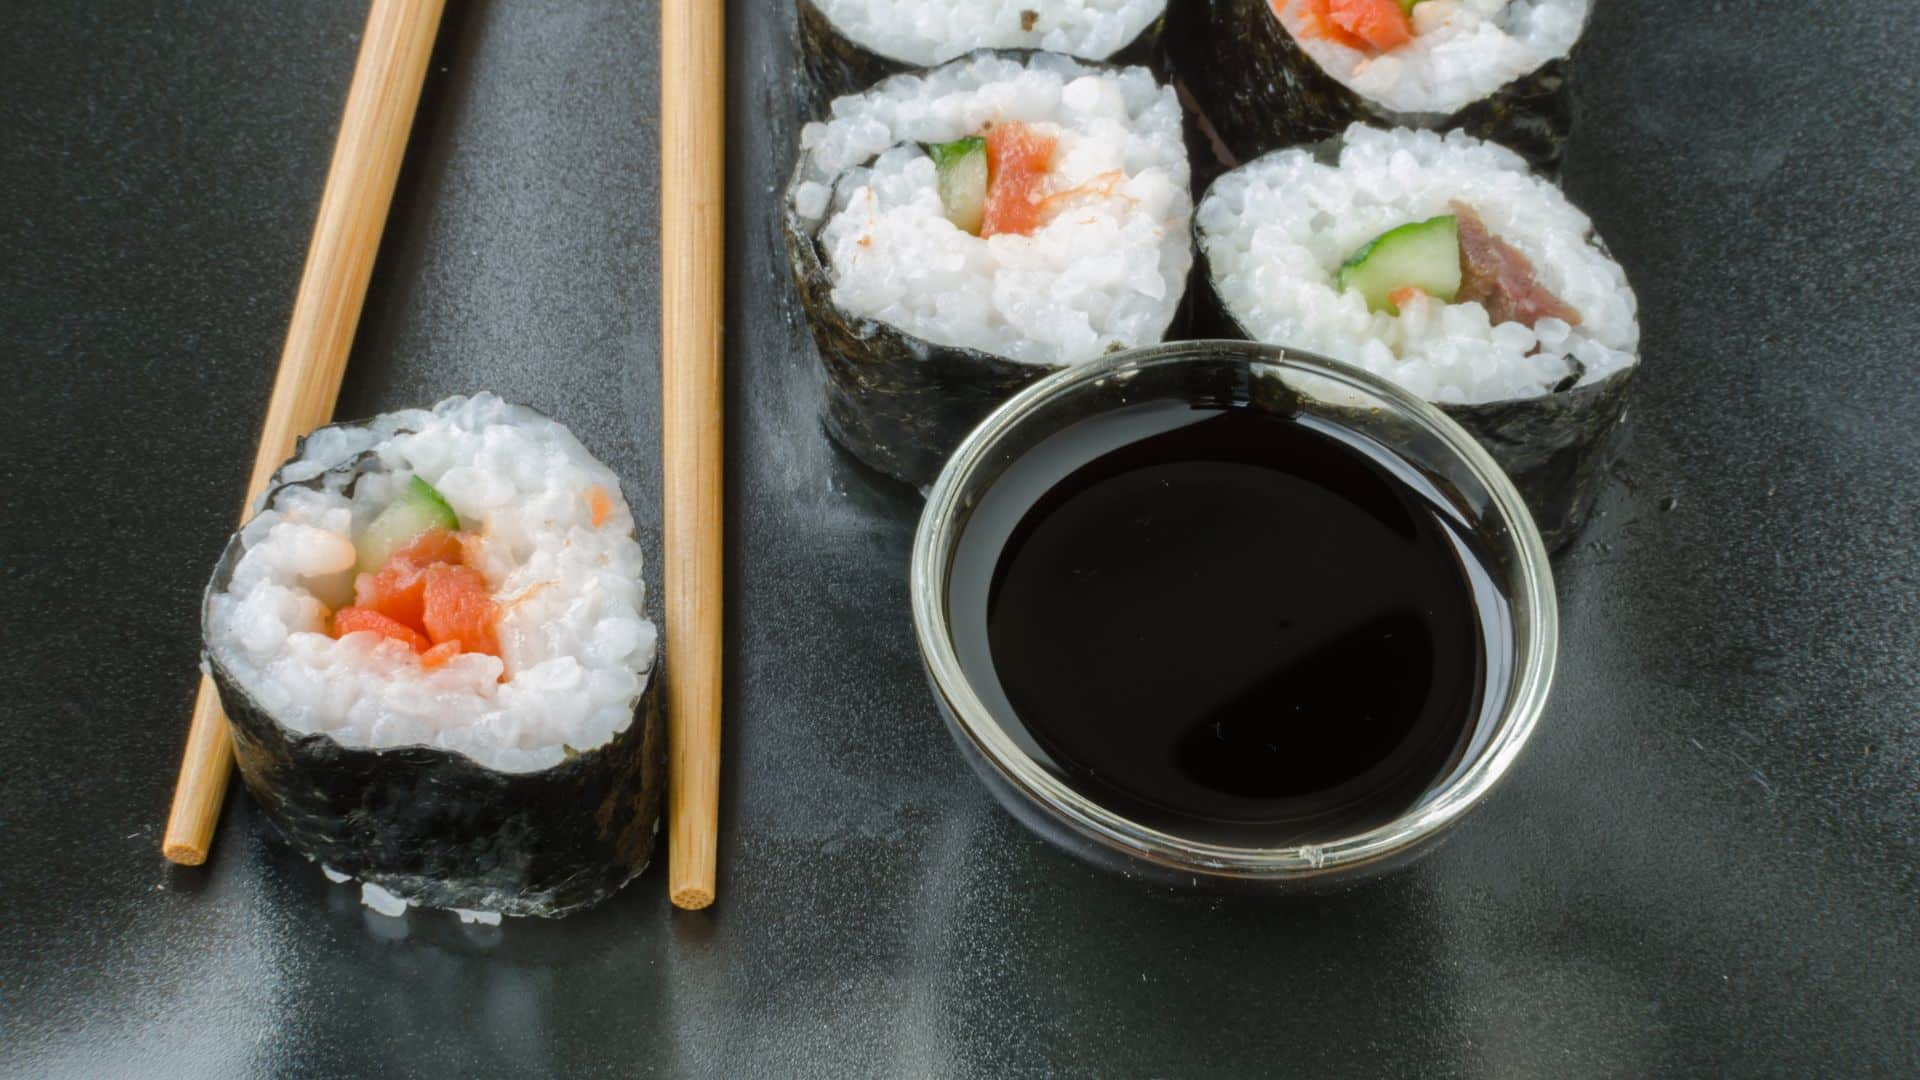 Sushi com salmão